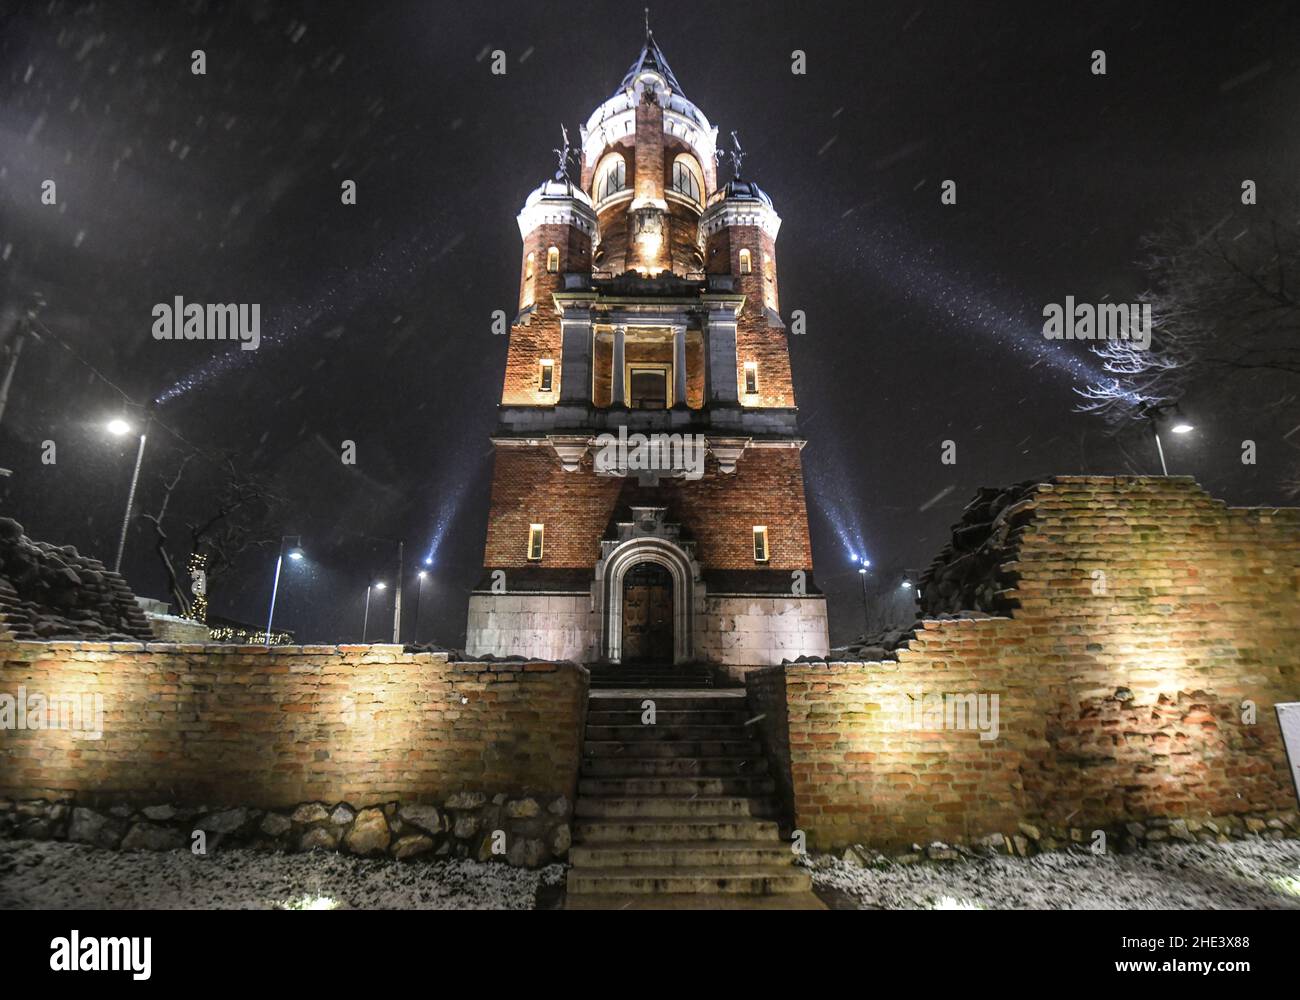 Nieve cayendo en la Torre Gardoš, o Torre del Milenio, y también conocida como Kula Sibinjanin Janka. Distrito de Zemun, Belgrado, Serbia Foto de stock